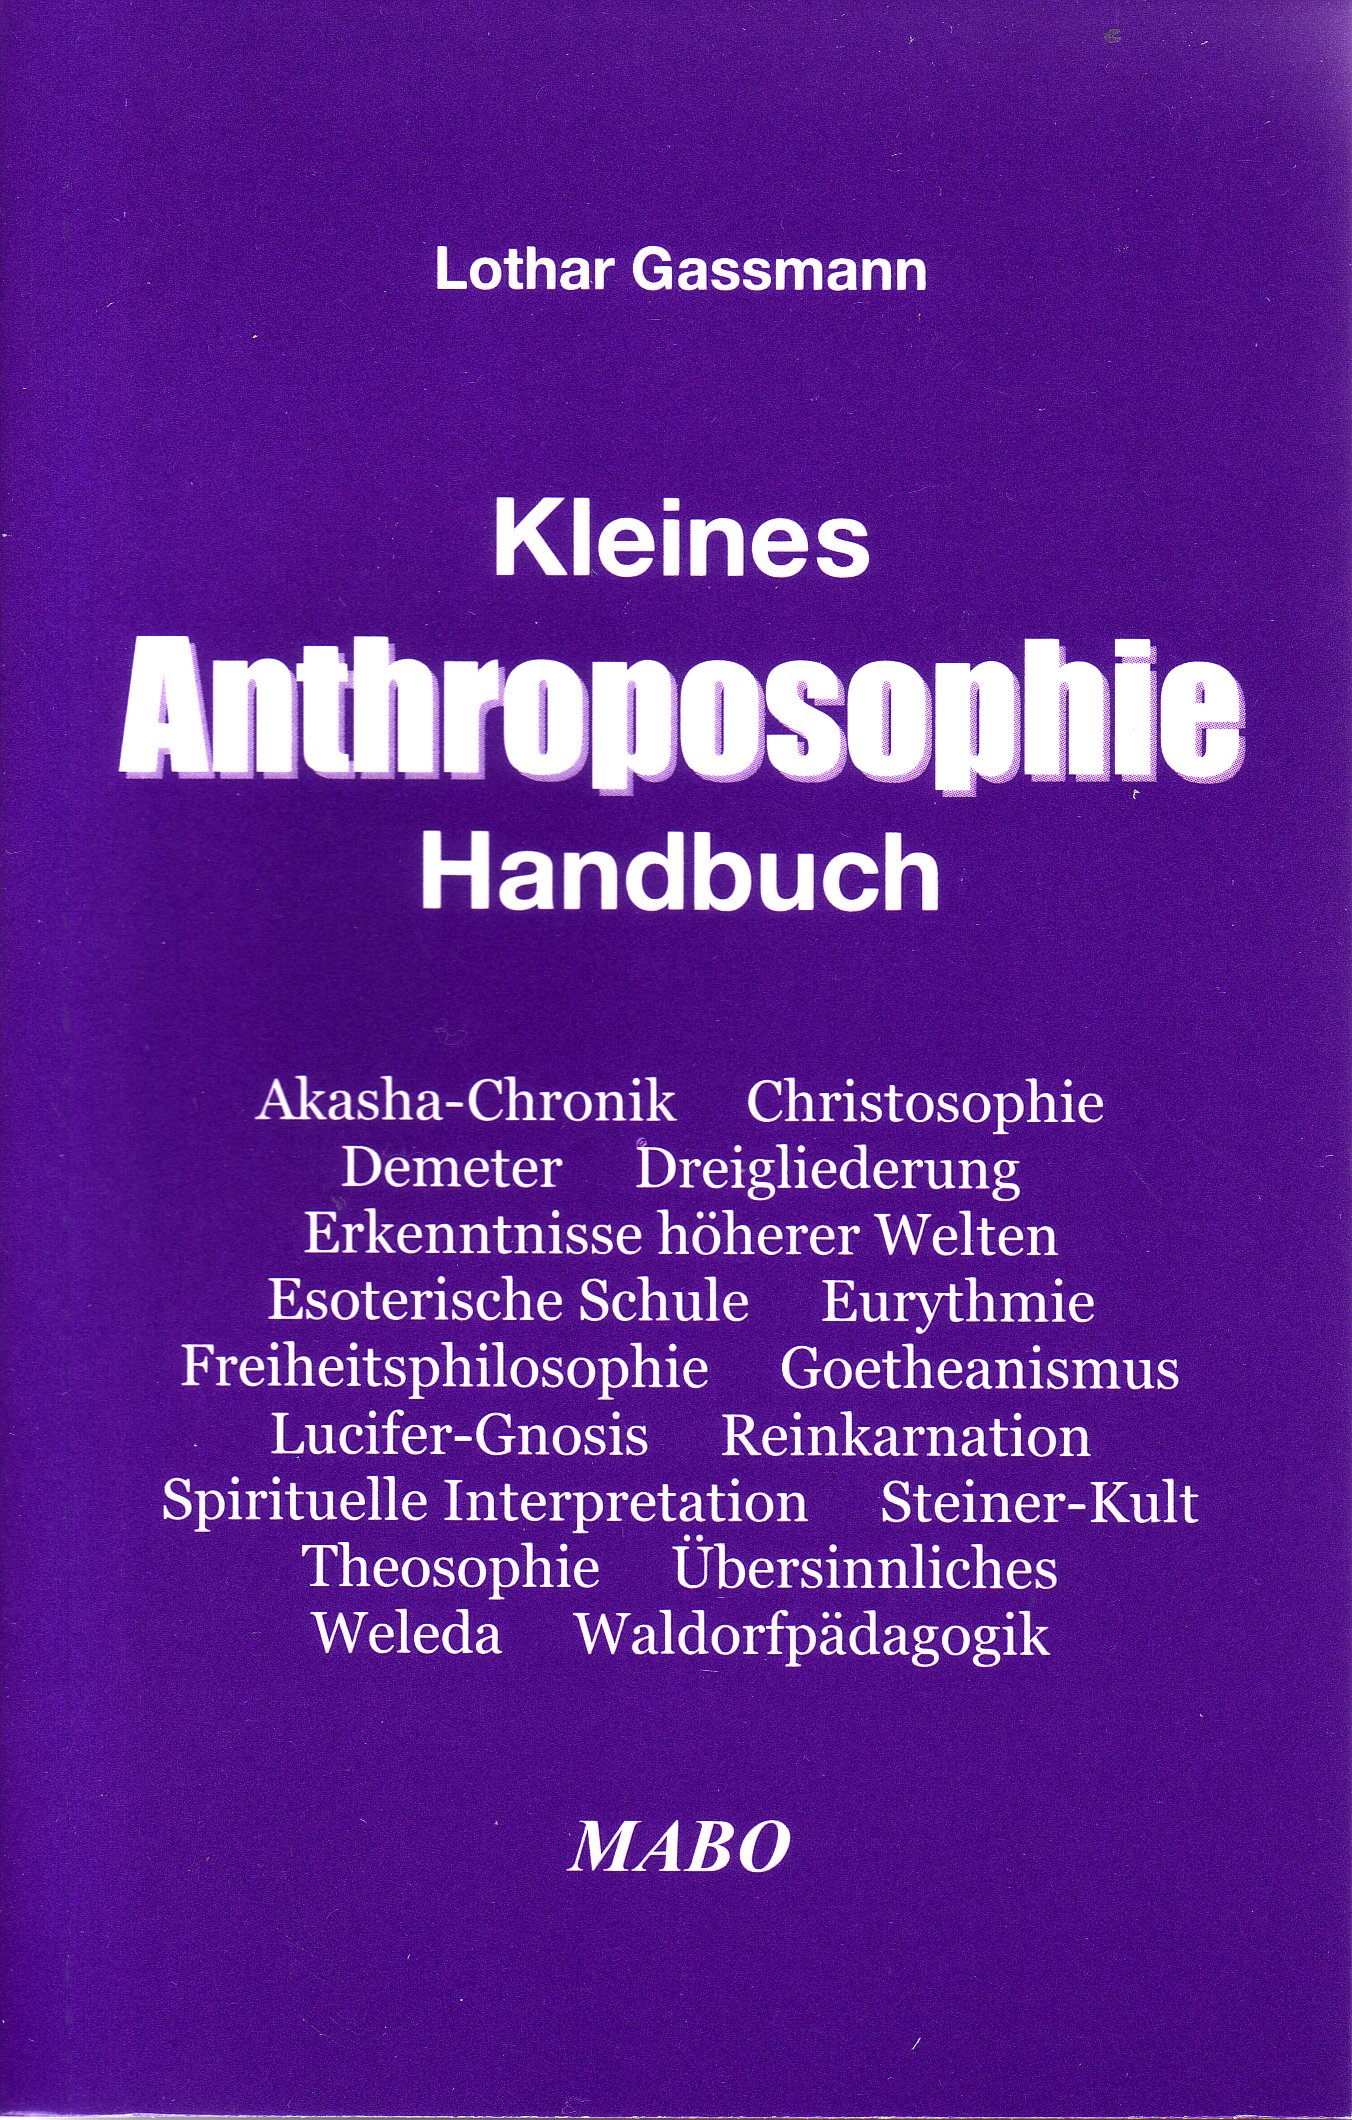 Kleines Anthroposophie Handbuch